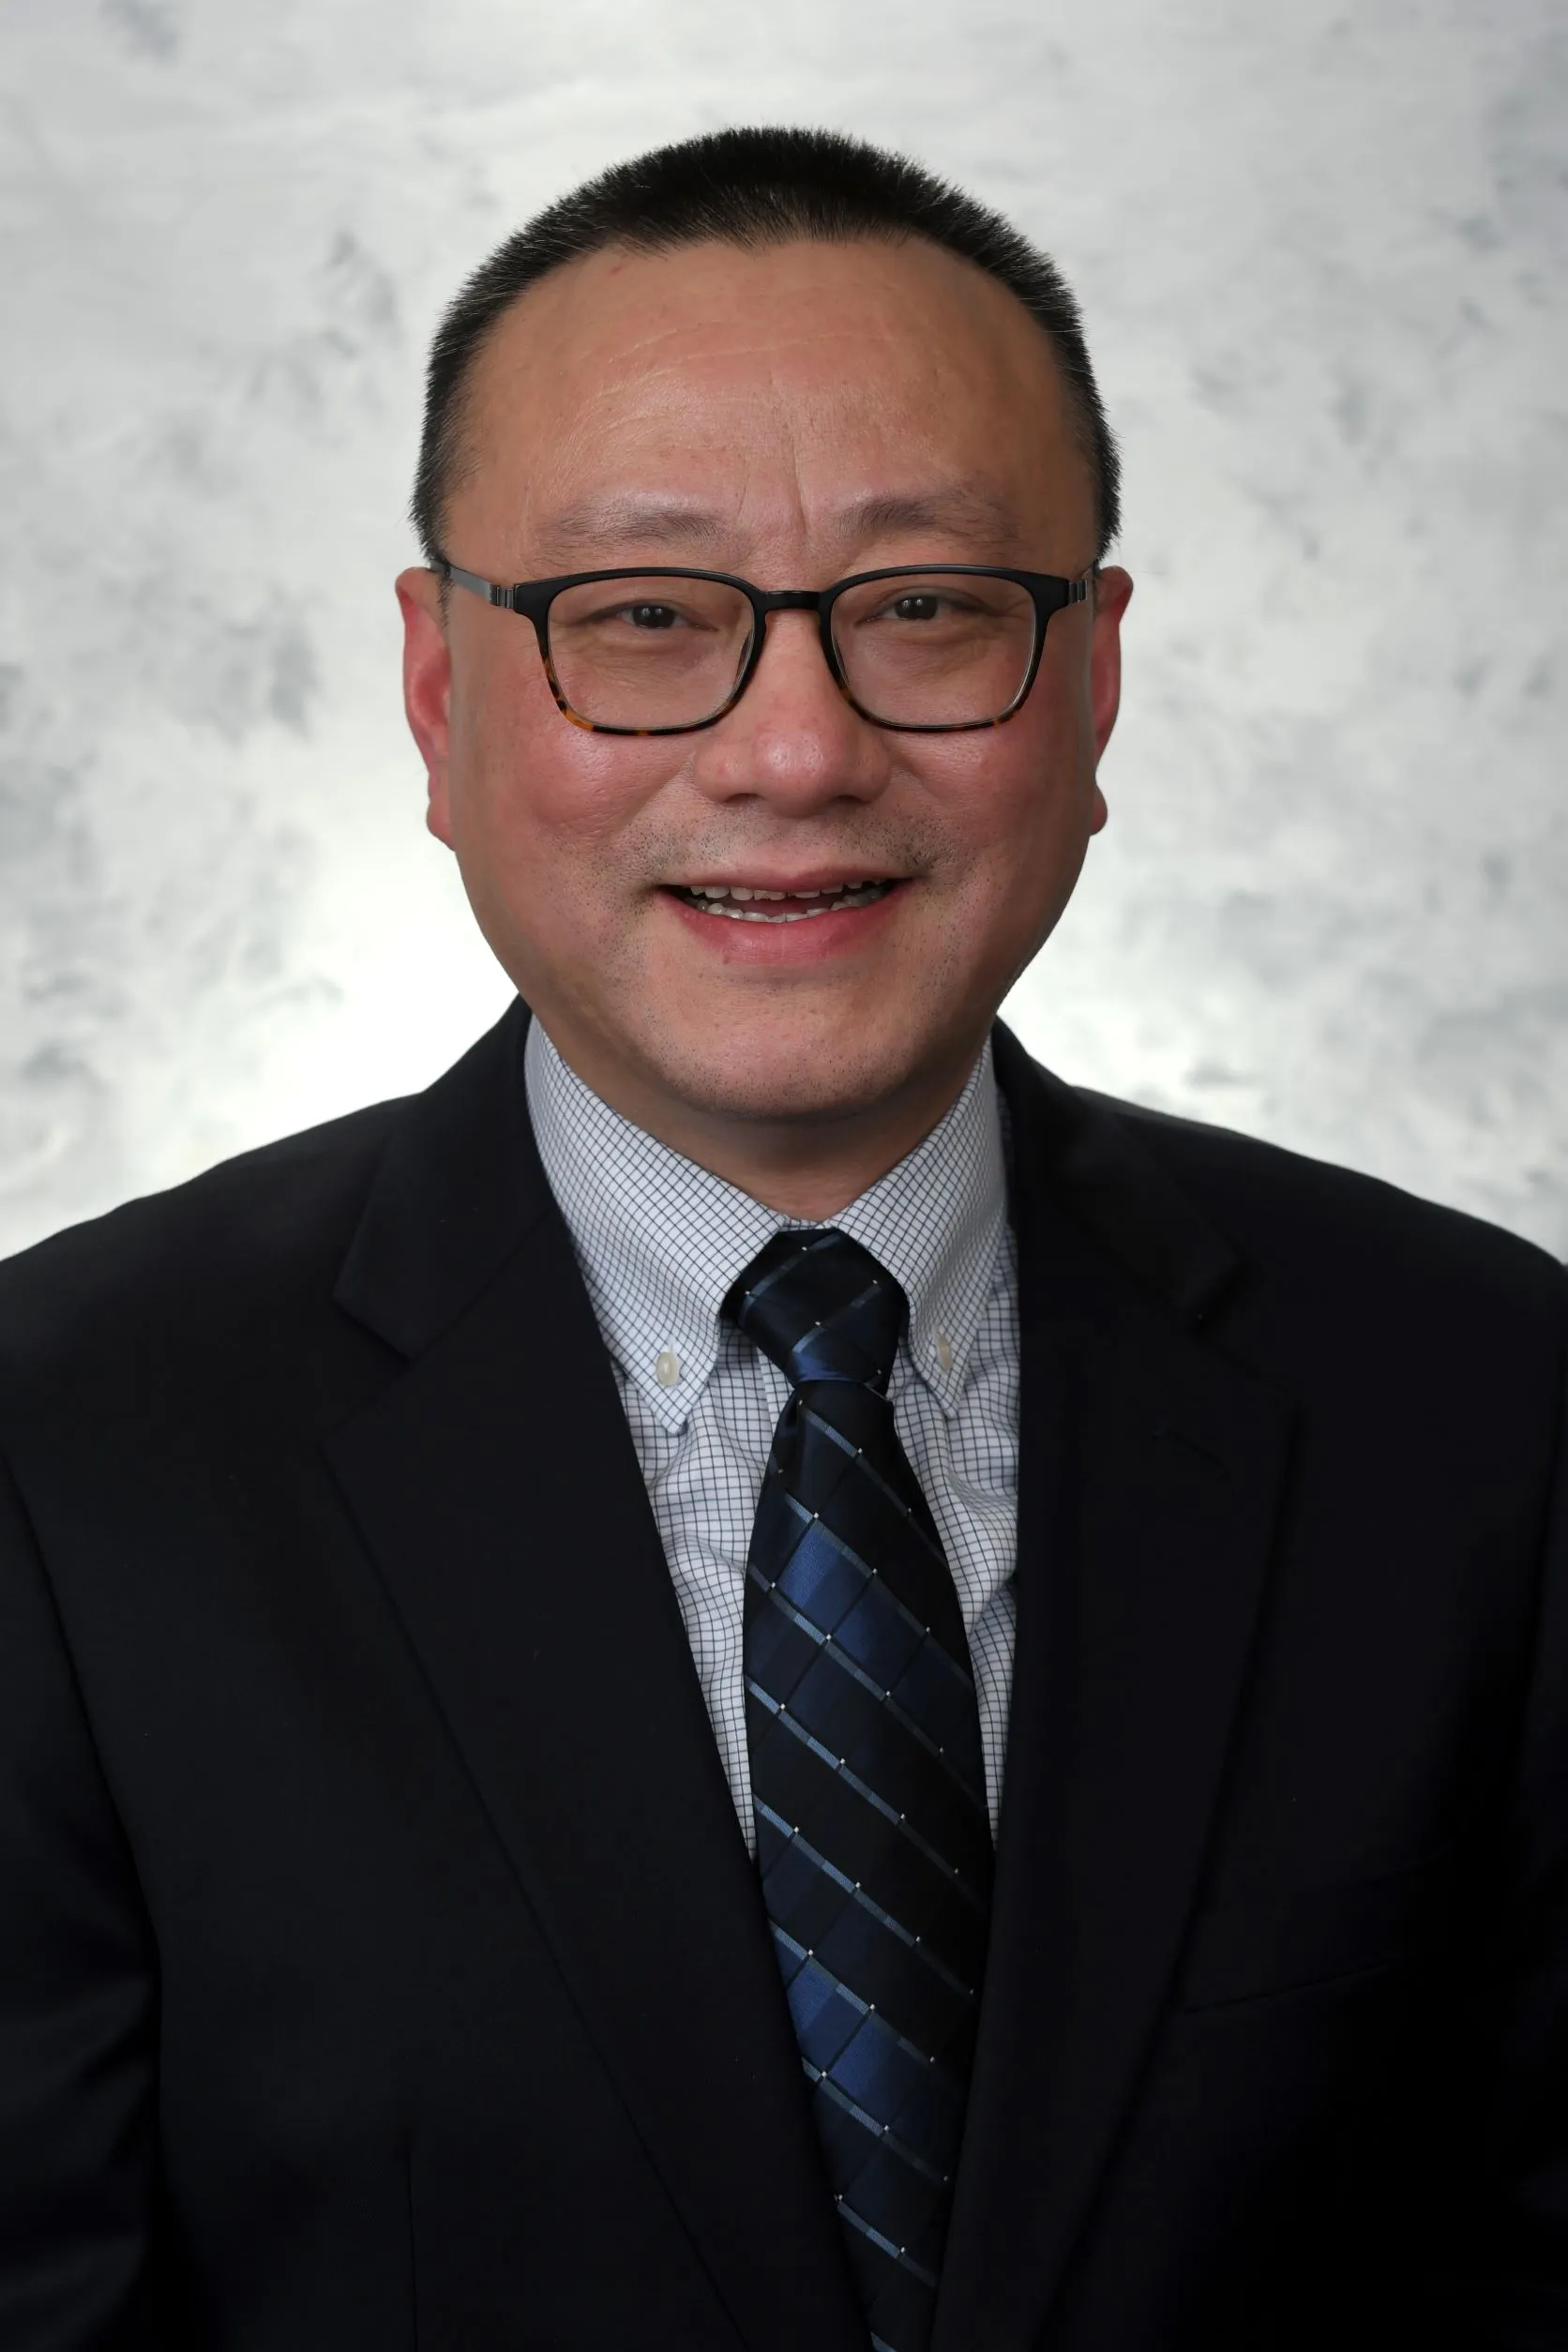 Dr. Suiwen He, MD